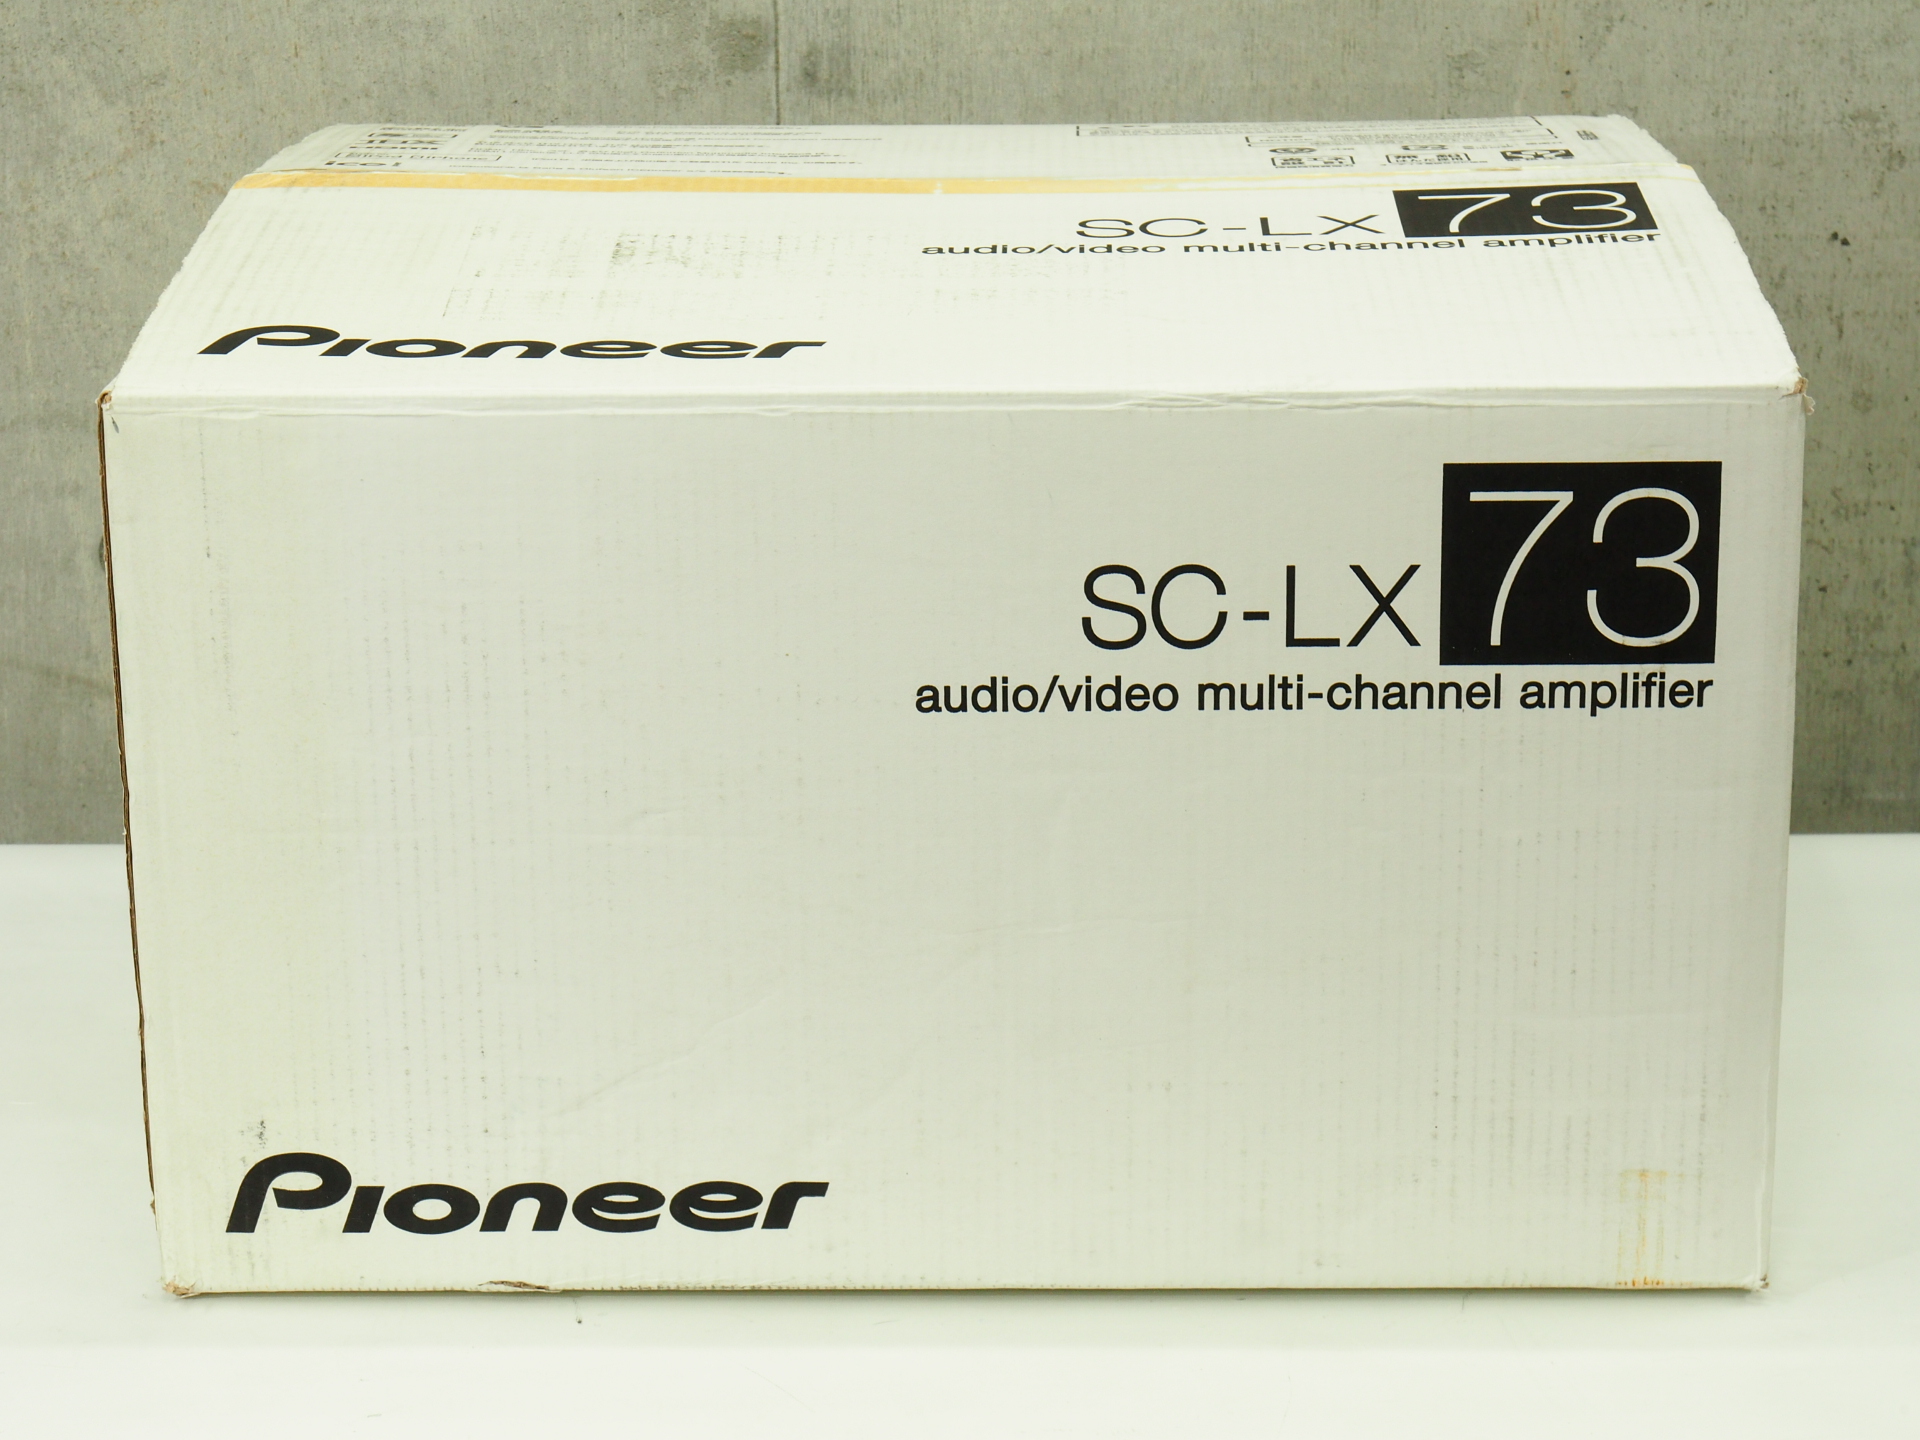 アバックWEB-SHOP / 【中古】Pioneer SC-LX73-特【コード01-10679】AV